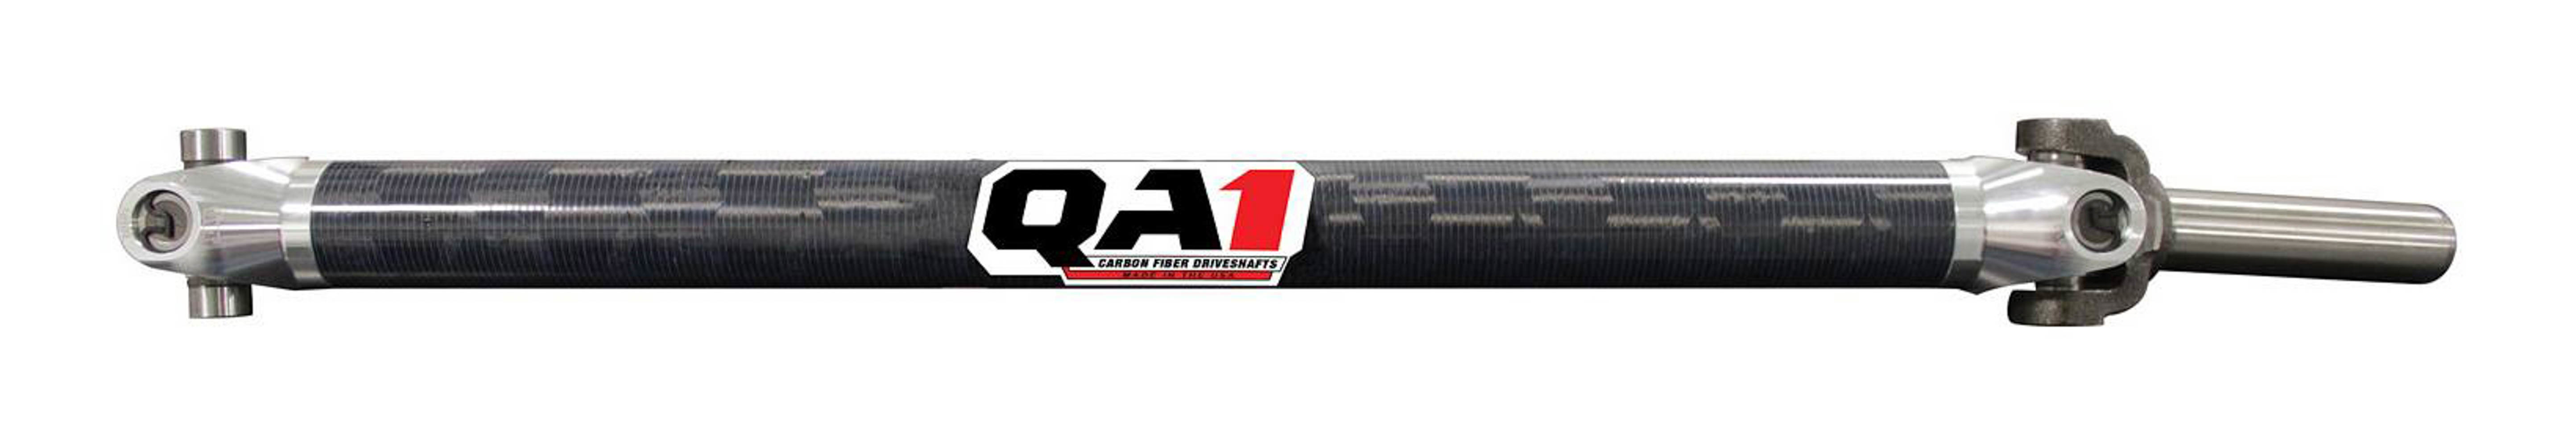 QA1 JJ-12202 Drive Shaft, Dirt Modified, 29.5 in Long, 2.25 in OD, 1310 U-Joints, 8 in Slip Yoke, Carbon Fiber, Universal, Each